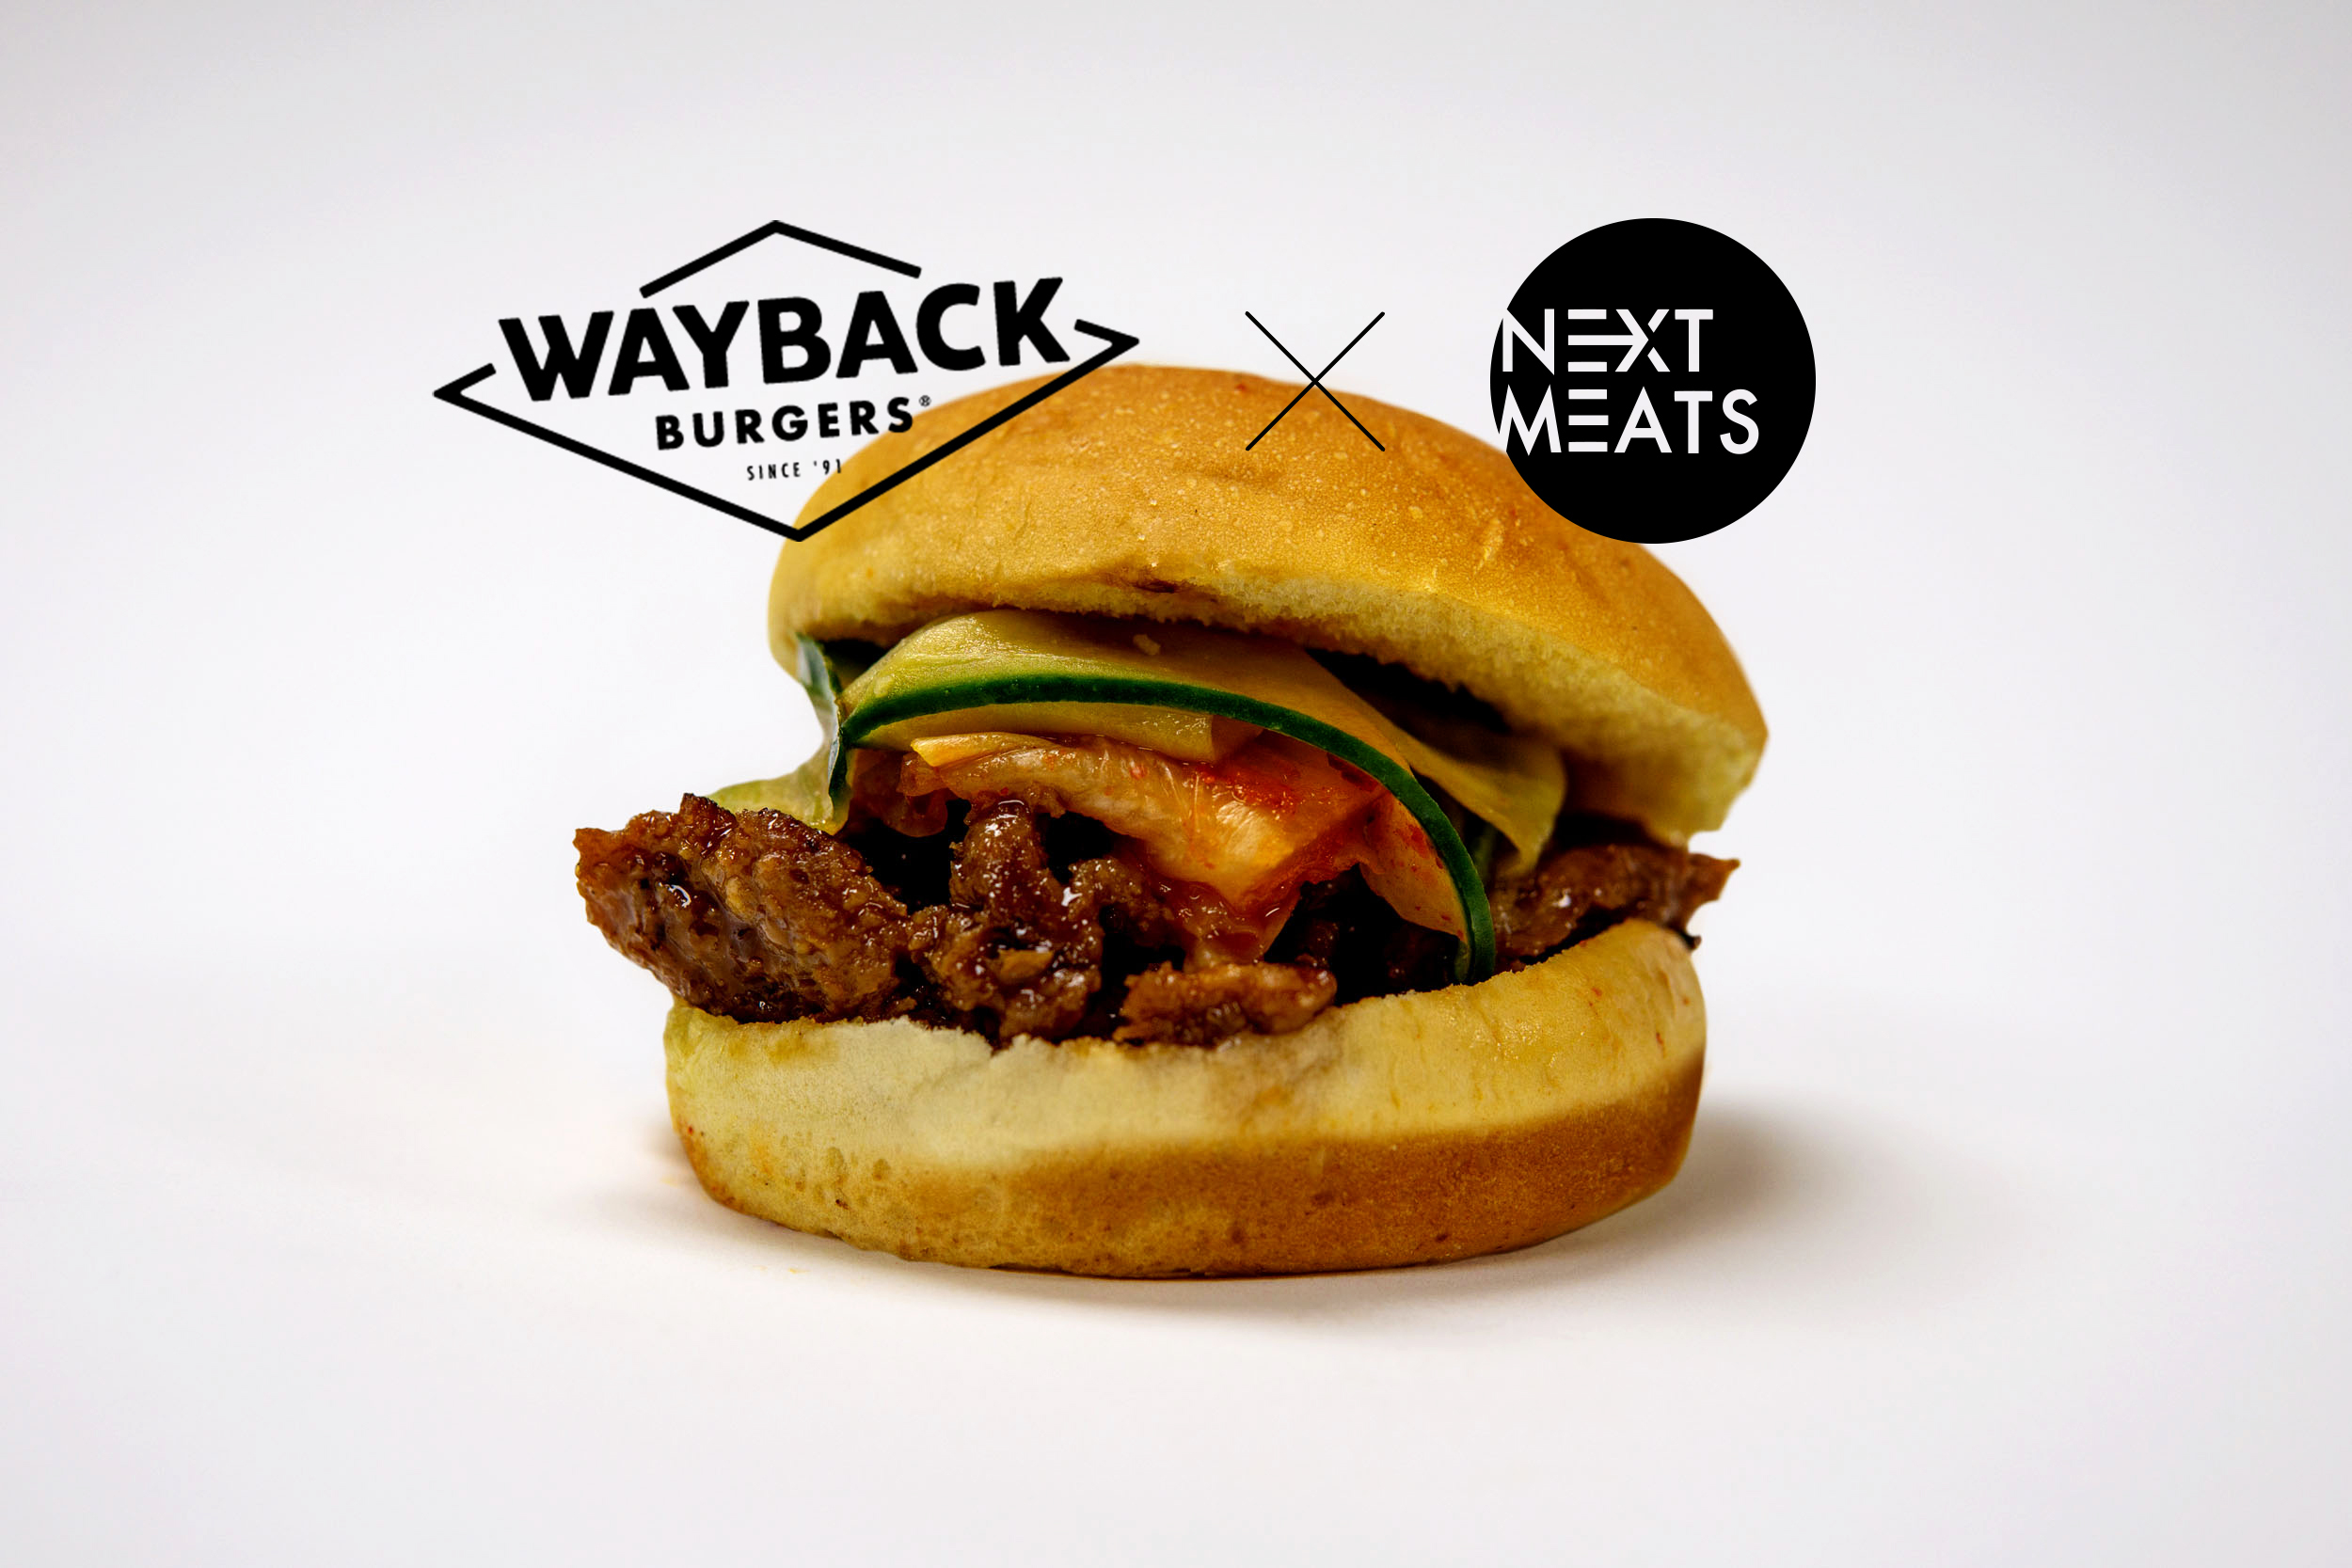 代替肉のネクストミーツがアメリカ上陸 人気バーガーチェーン Wayback Burgers とのコラボバーガーを提供開始 ネクストミーツのプレスリリース